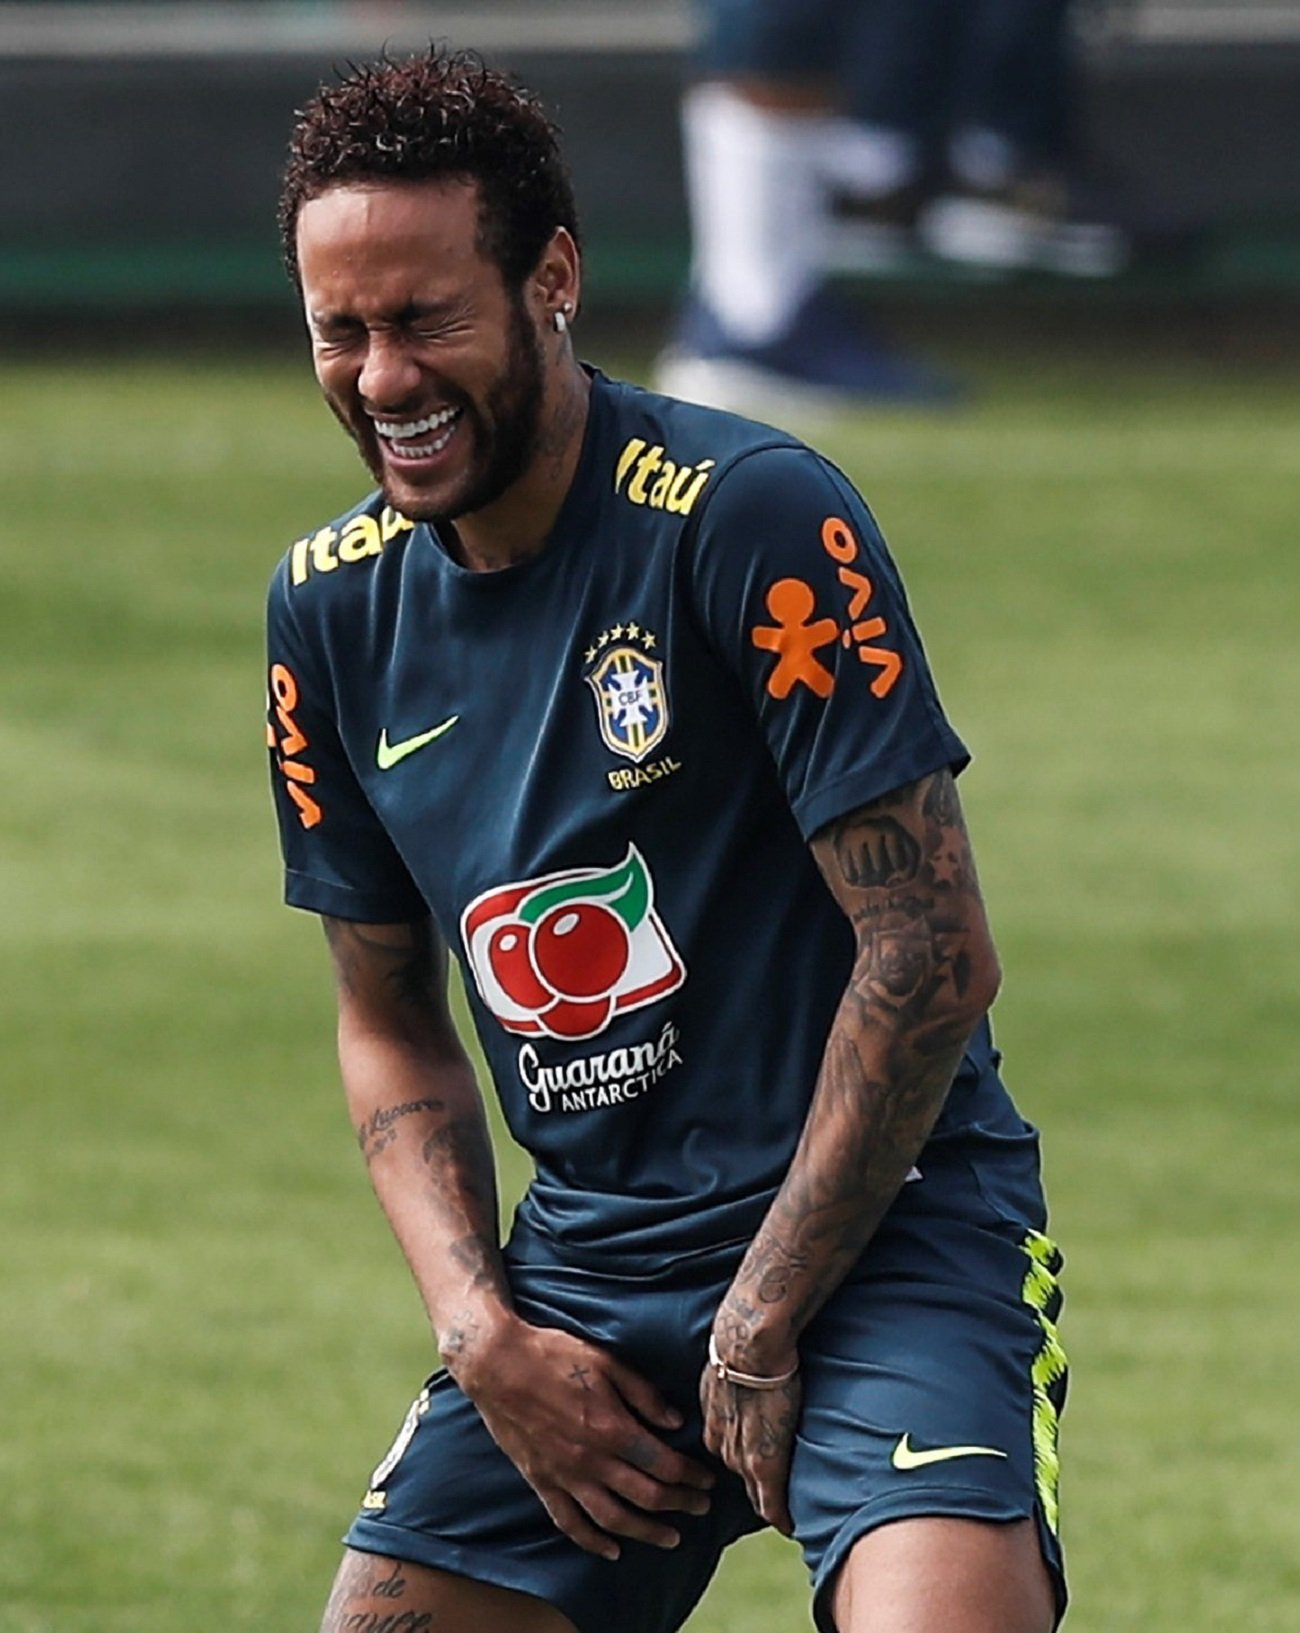 El Barça pregunta por Neymar y el PSG responde de manera contundente